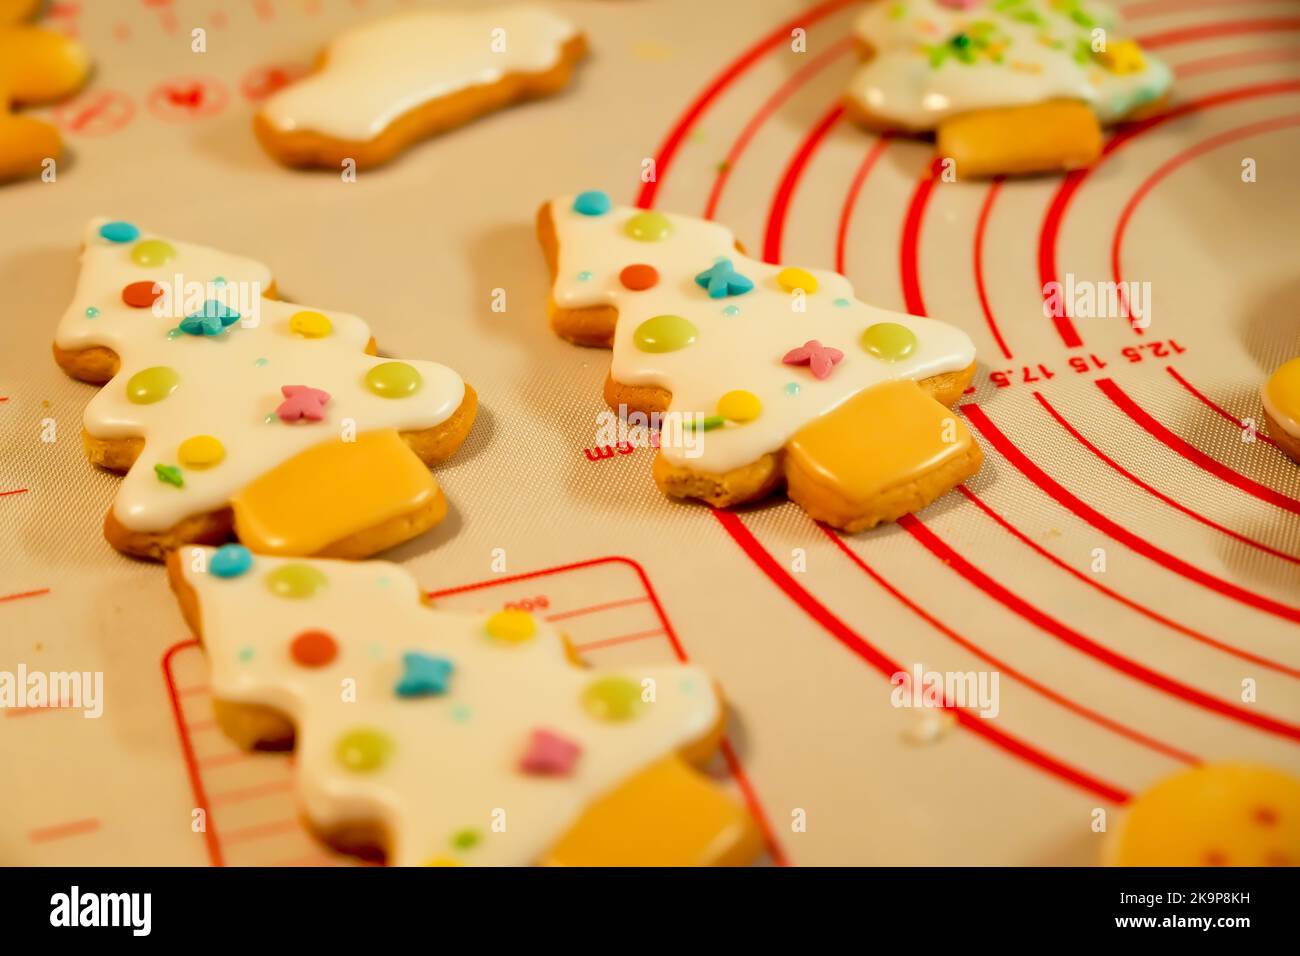 elaboración de galletas navideñas, galletas artesanales, pan de jengibre. Foto de stock